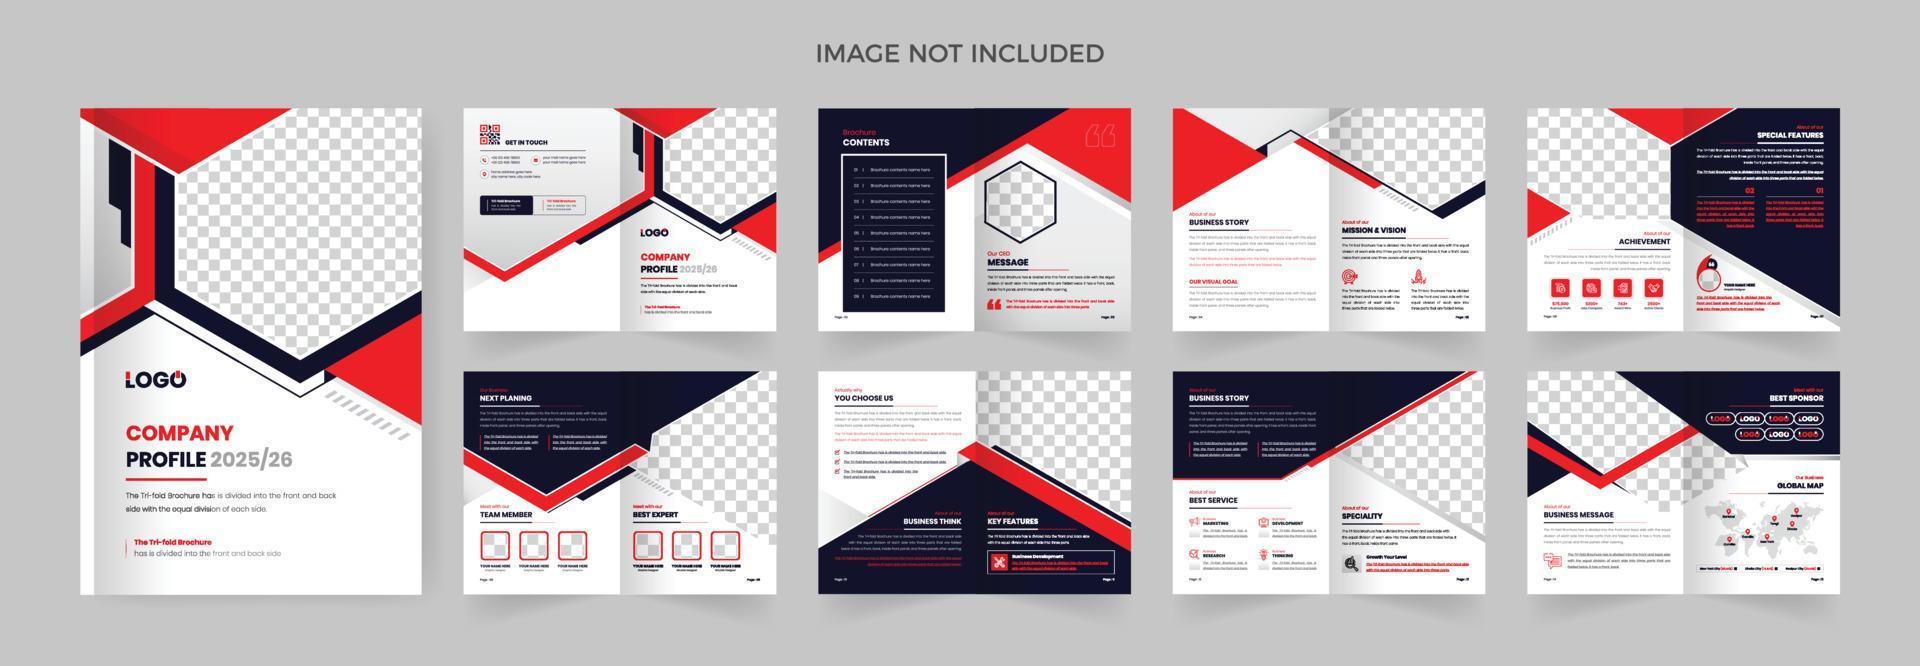 Plantilla de diseño de folleto de negocios corporativos de 16 páginas, color rojo y negro, tema moderno vector